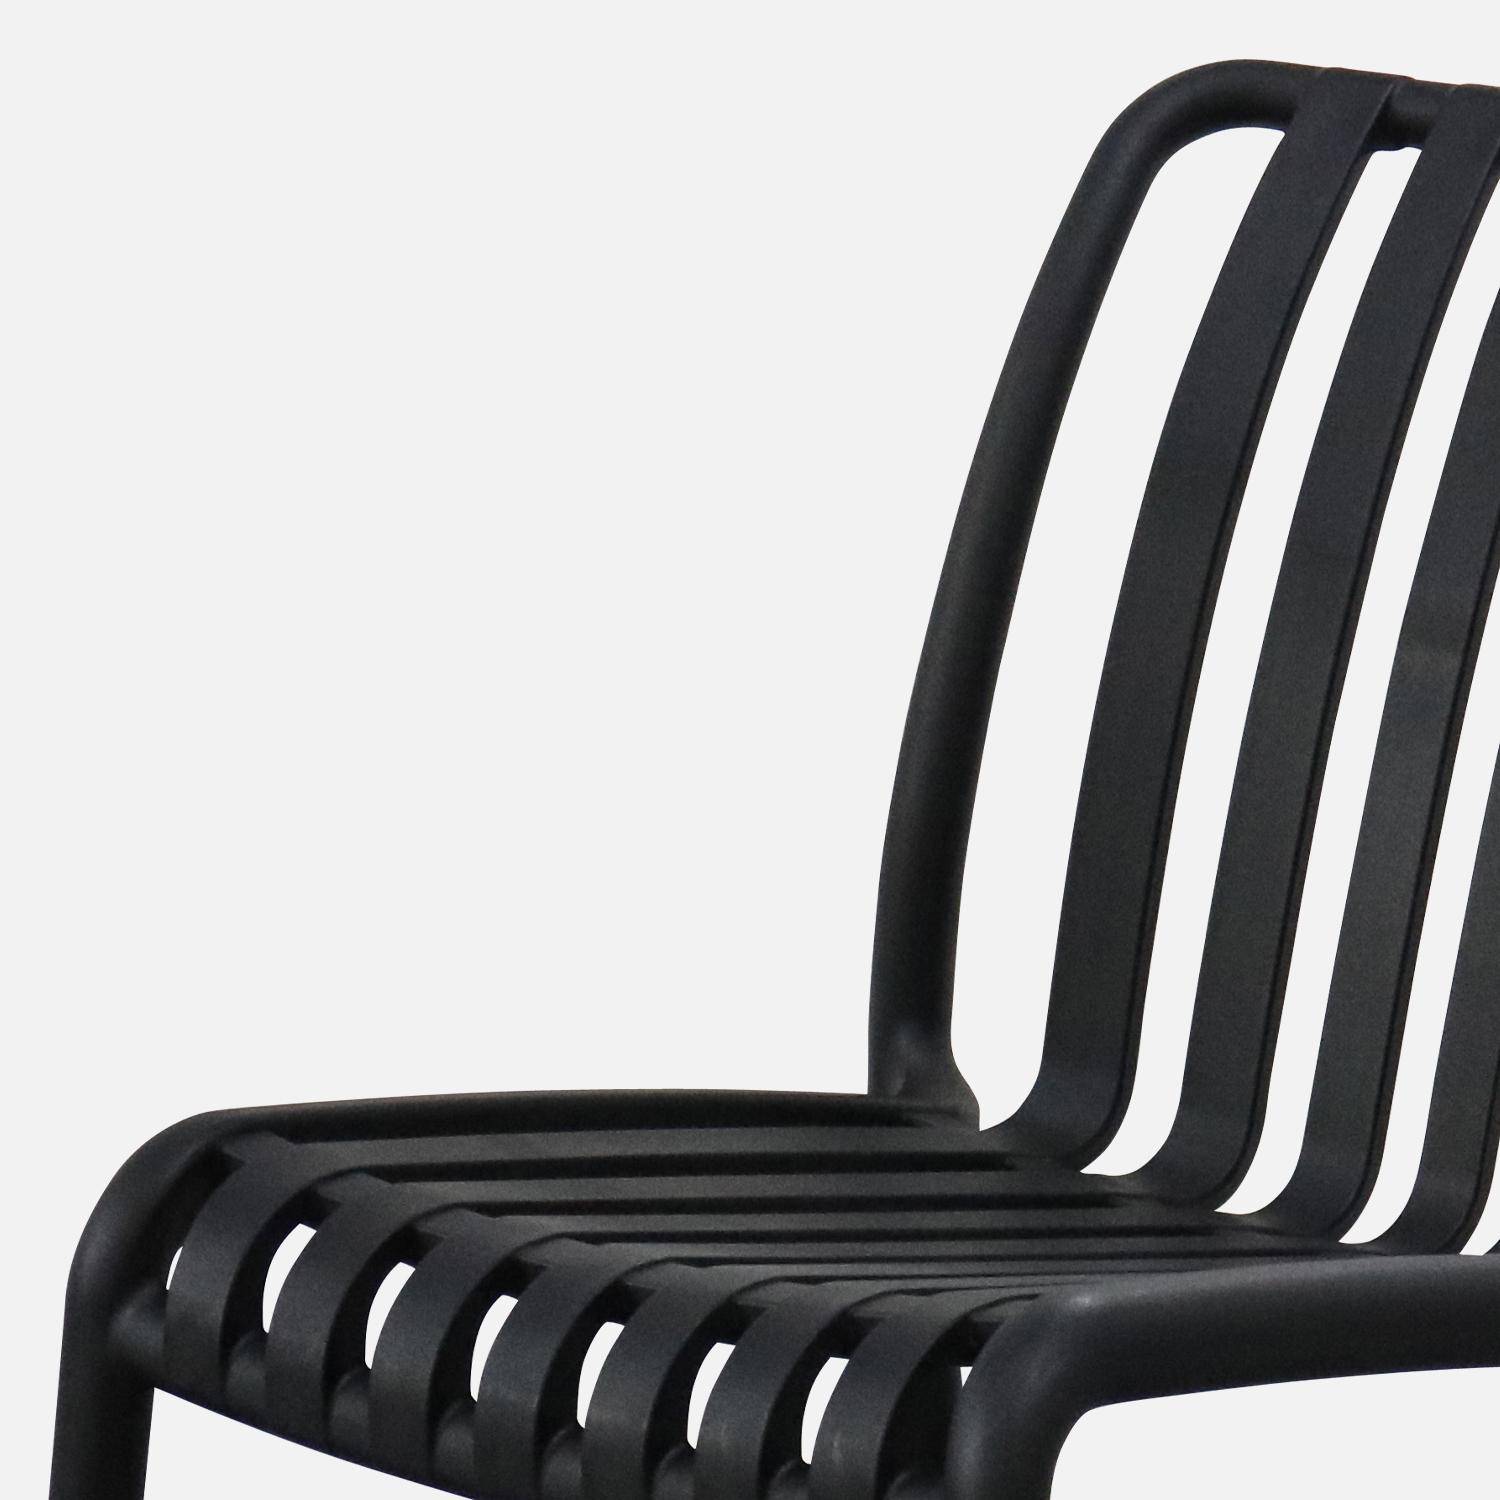 4er Set Gartenstühle aus schwarzem Kunststoff, stapelbar, bereits montiert - Agathe,sweeek,Photo6